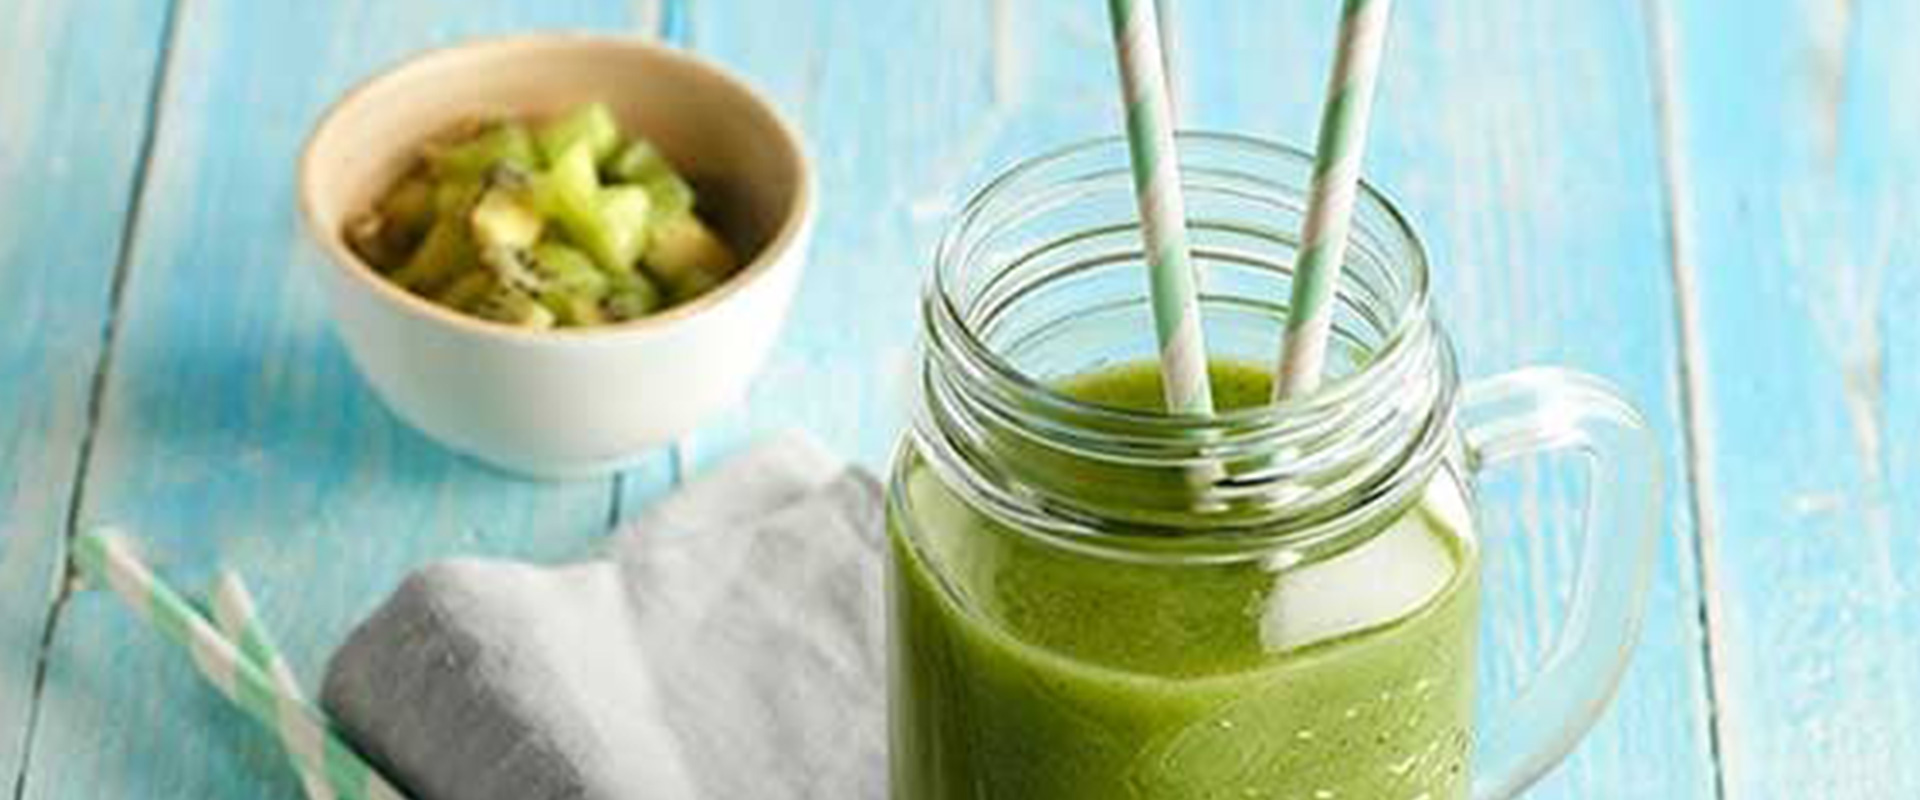 Recipe1_Celery-asparagus-kale-and-kiwi-smoothie-thumbnail.jpg